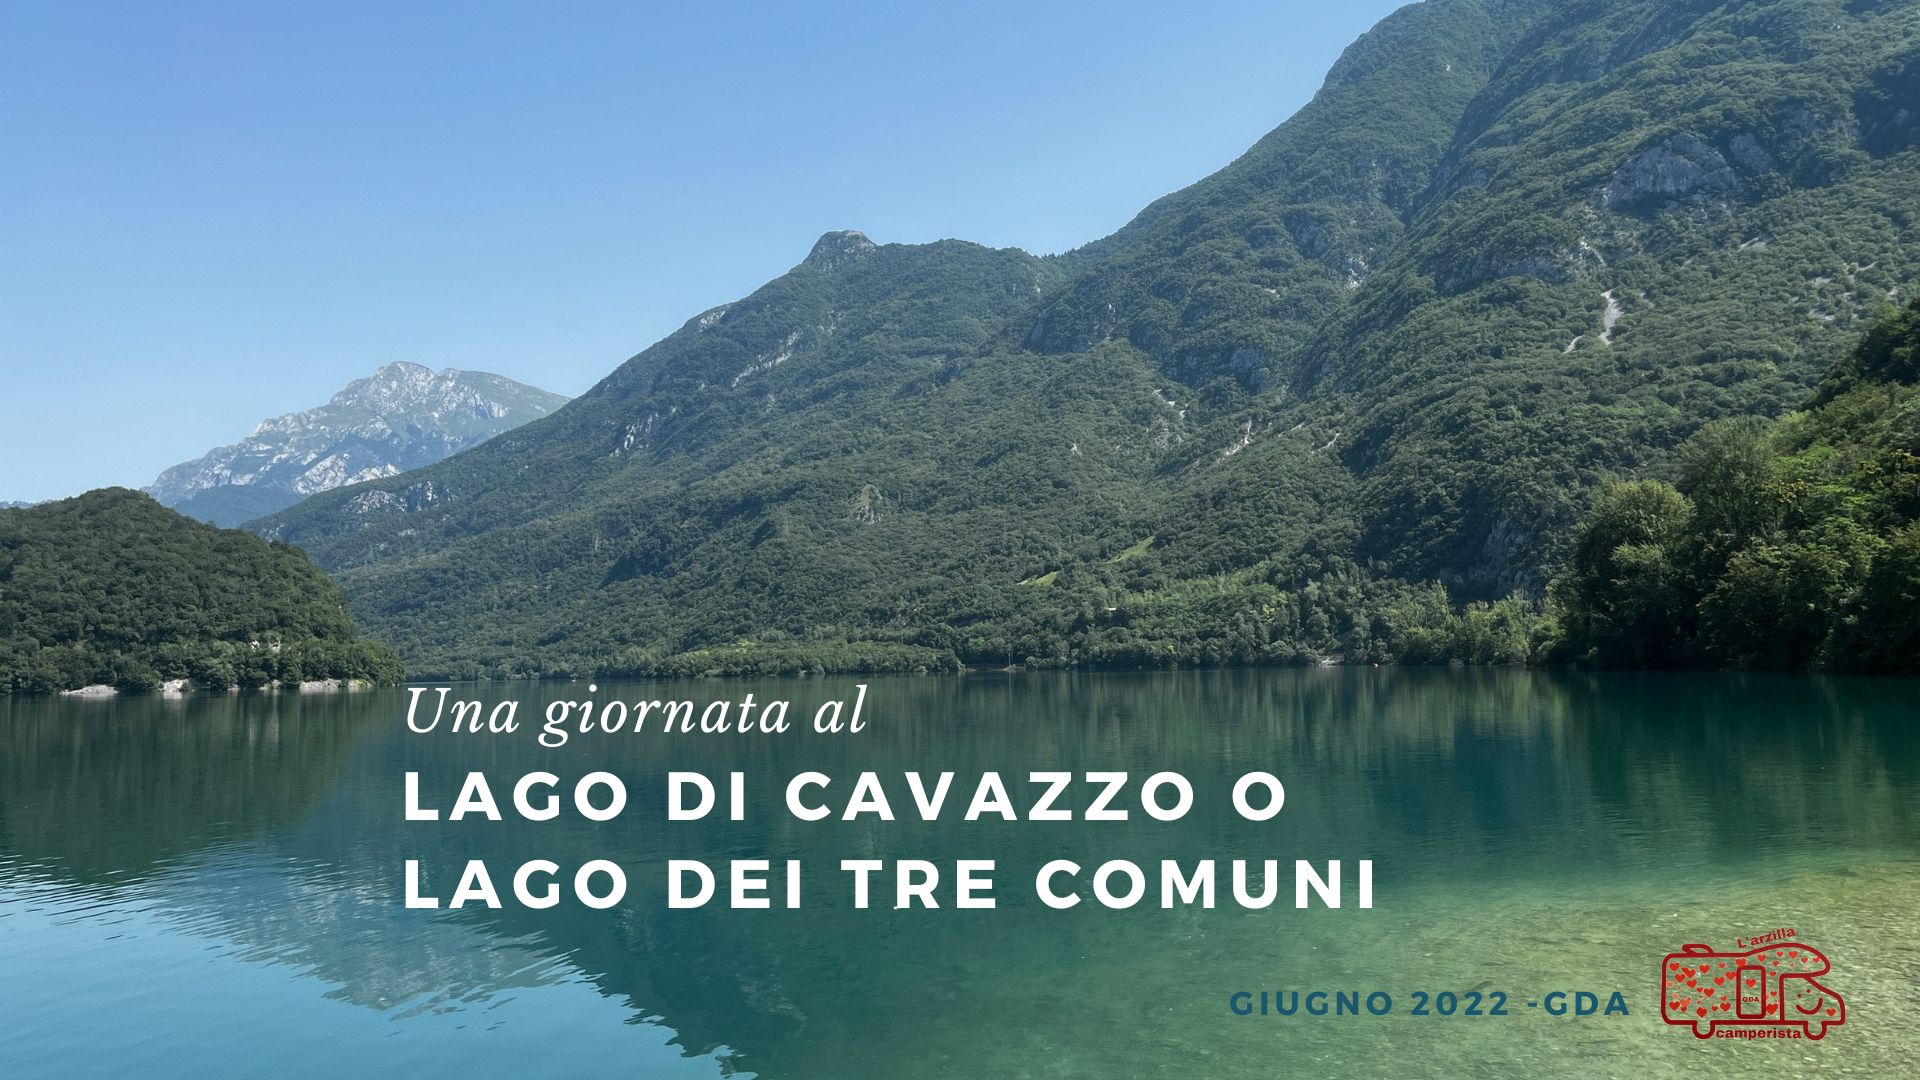 Lago dei tre comuni o lago di Cavazzo